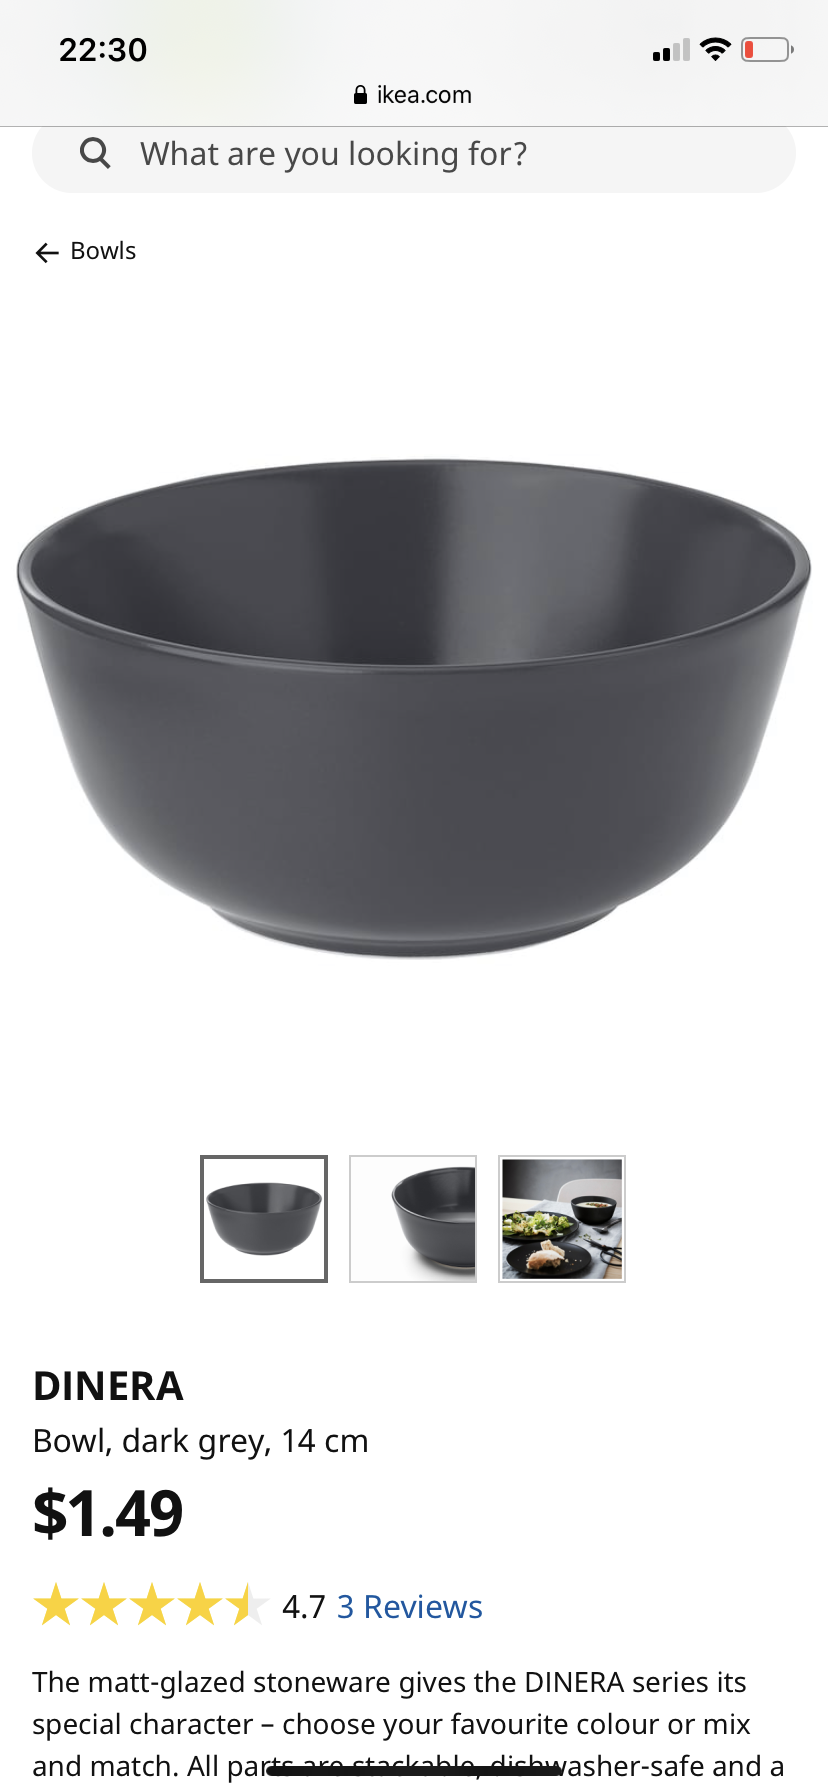 Dark grey bowls